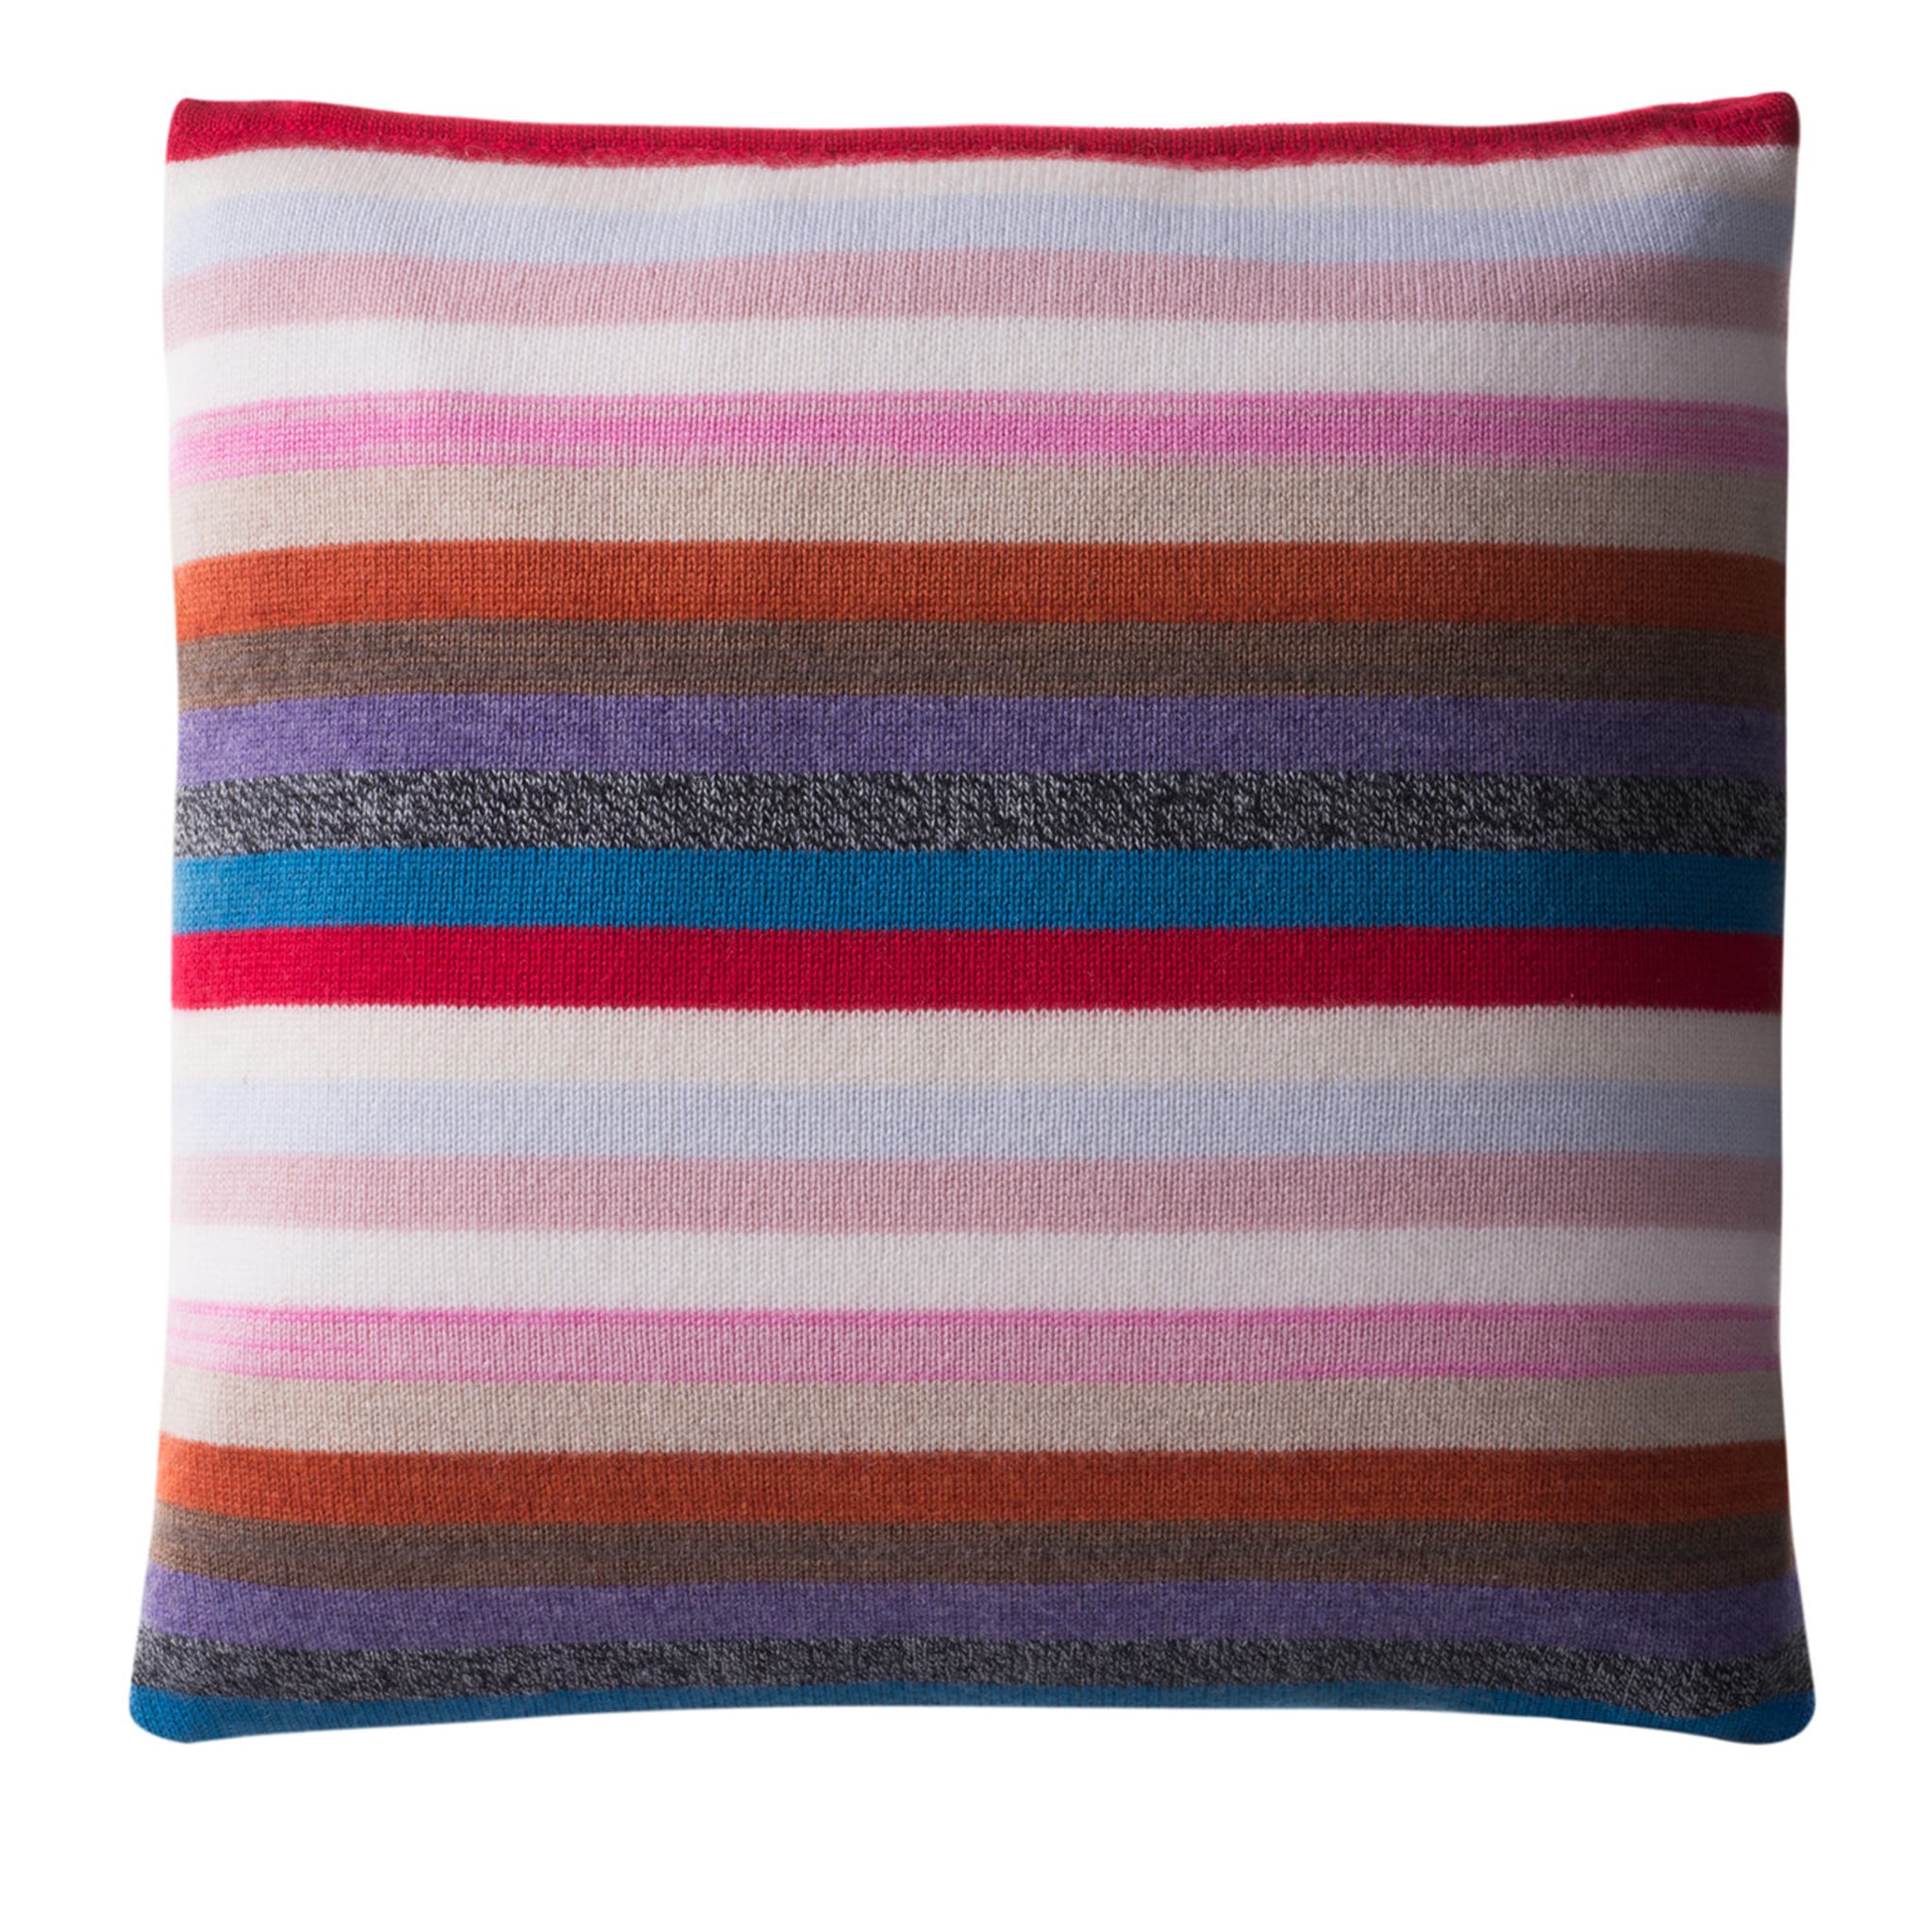 Multicolor Stripe Square Cushion #1 - Alternative view 1